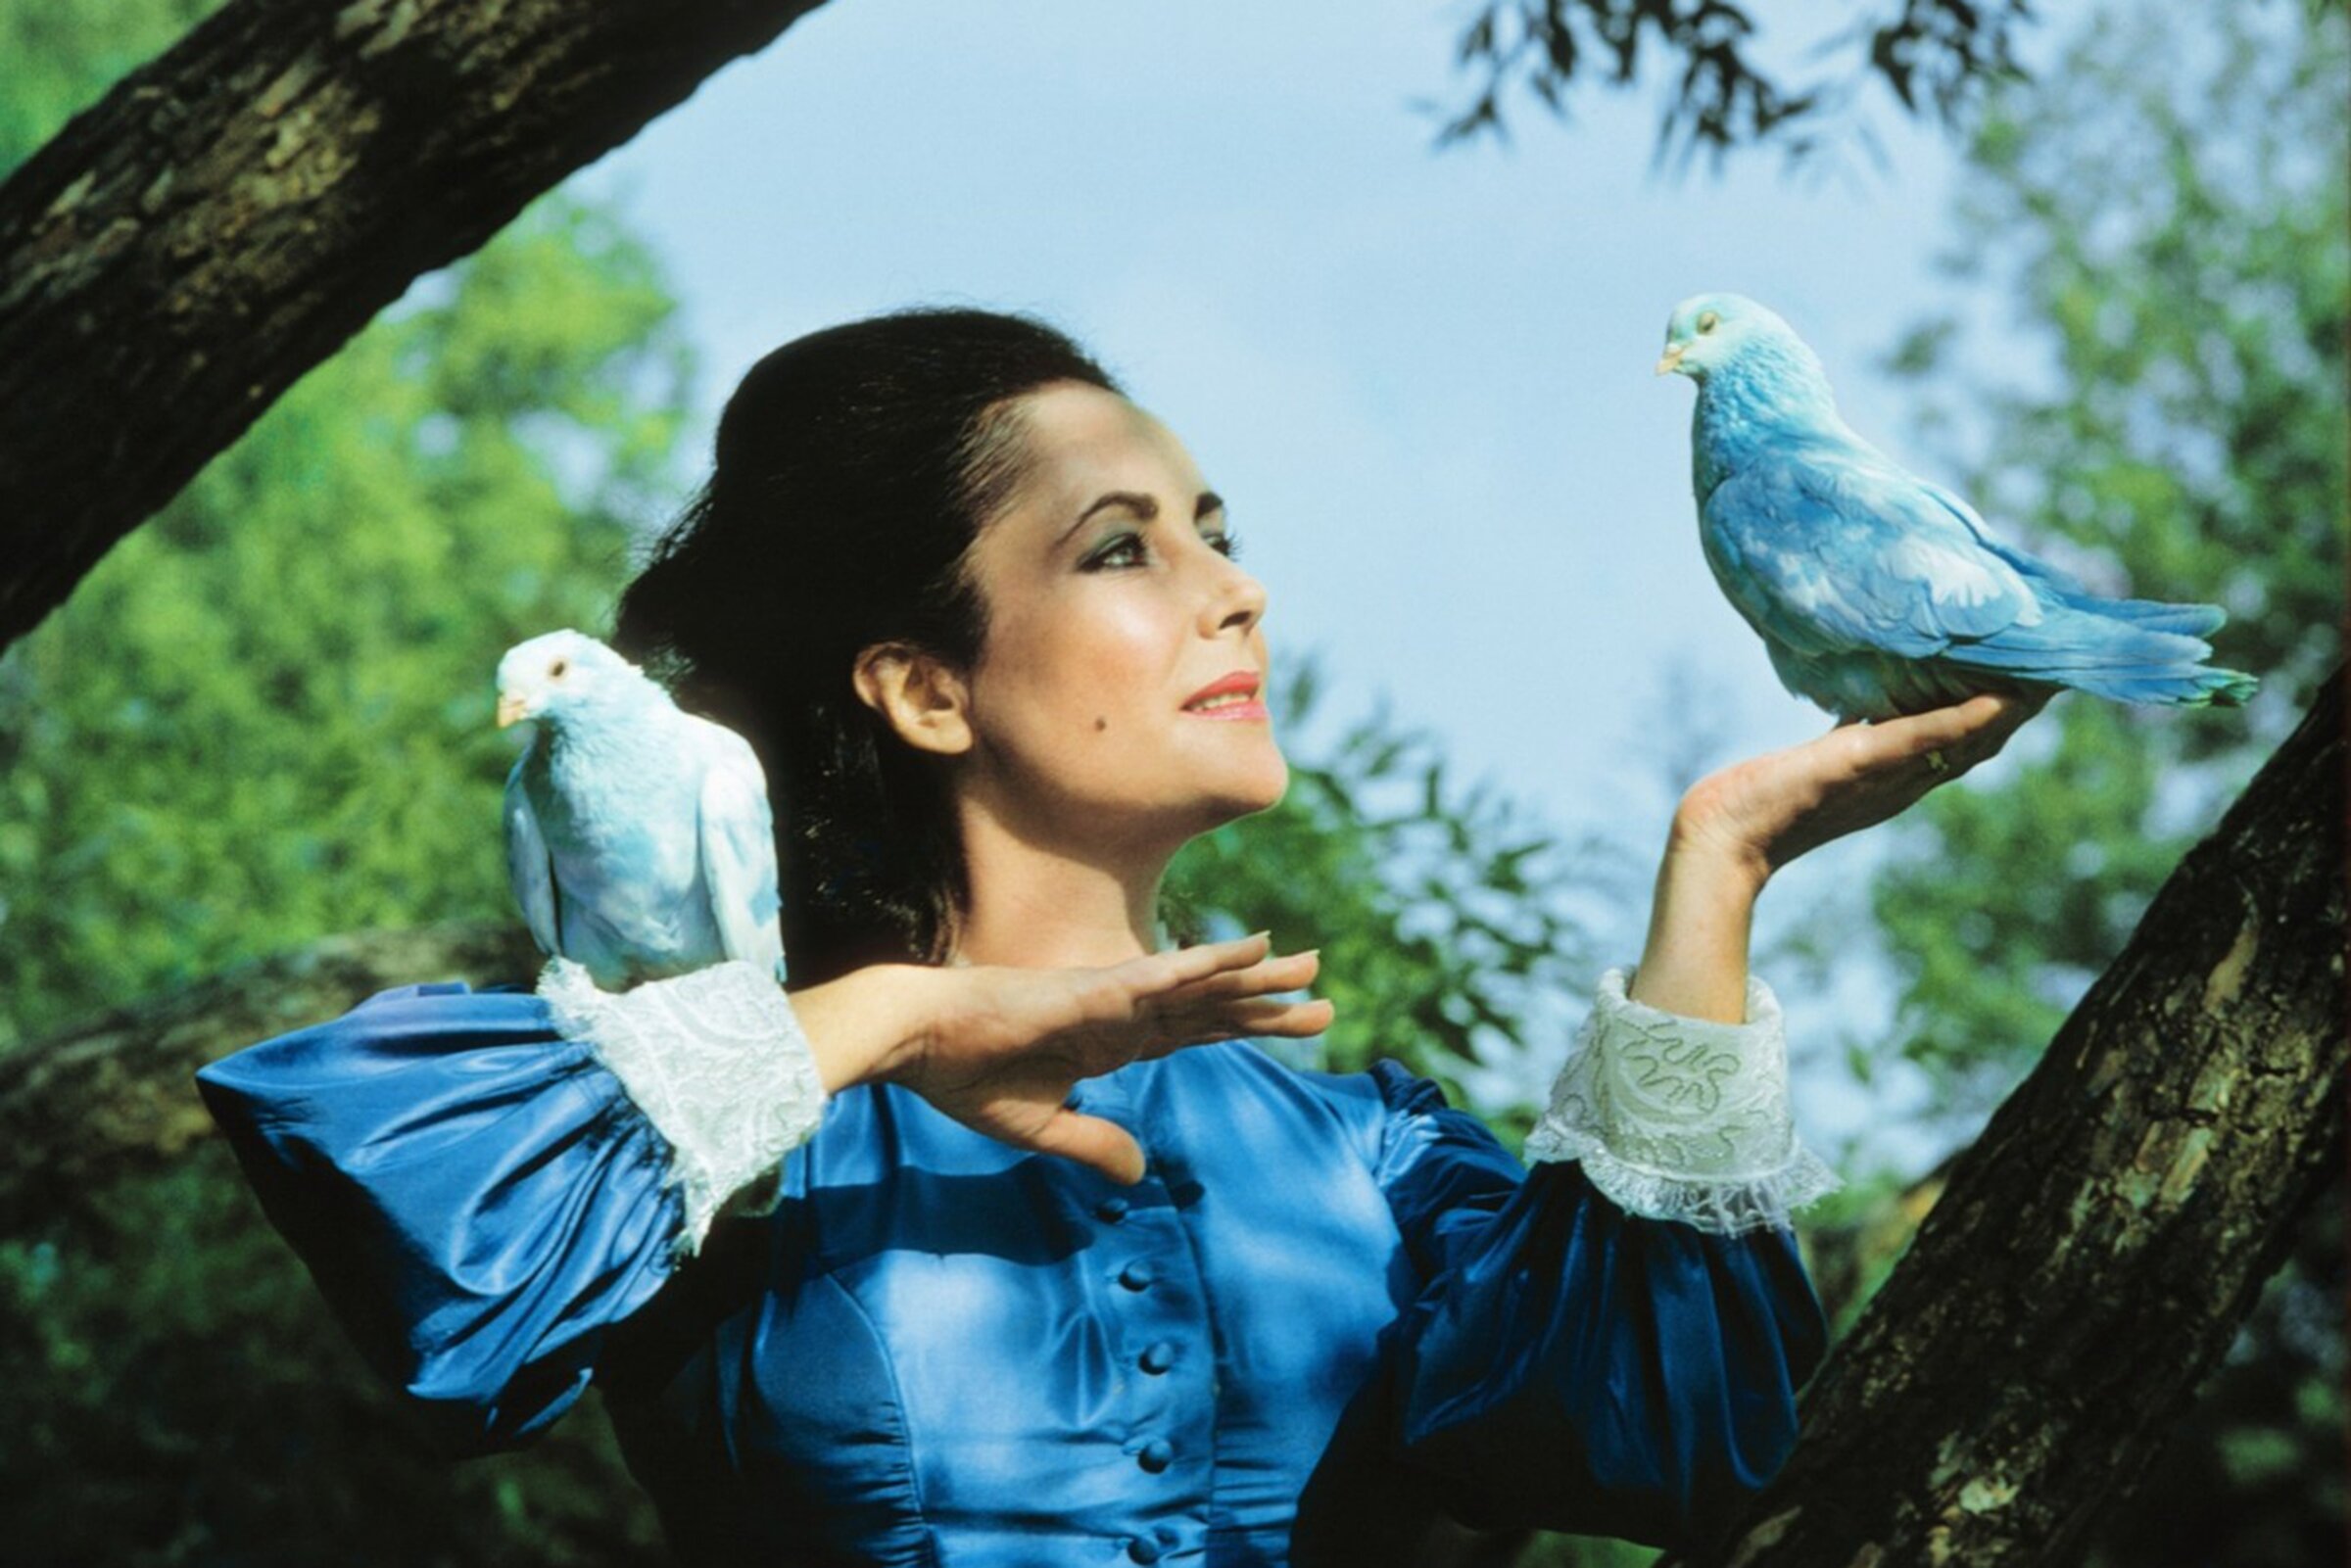 Синяя птица фильм 1976